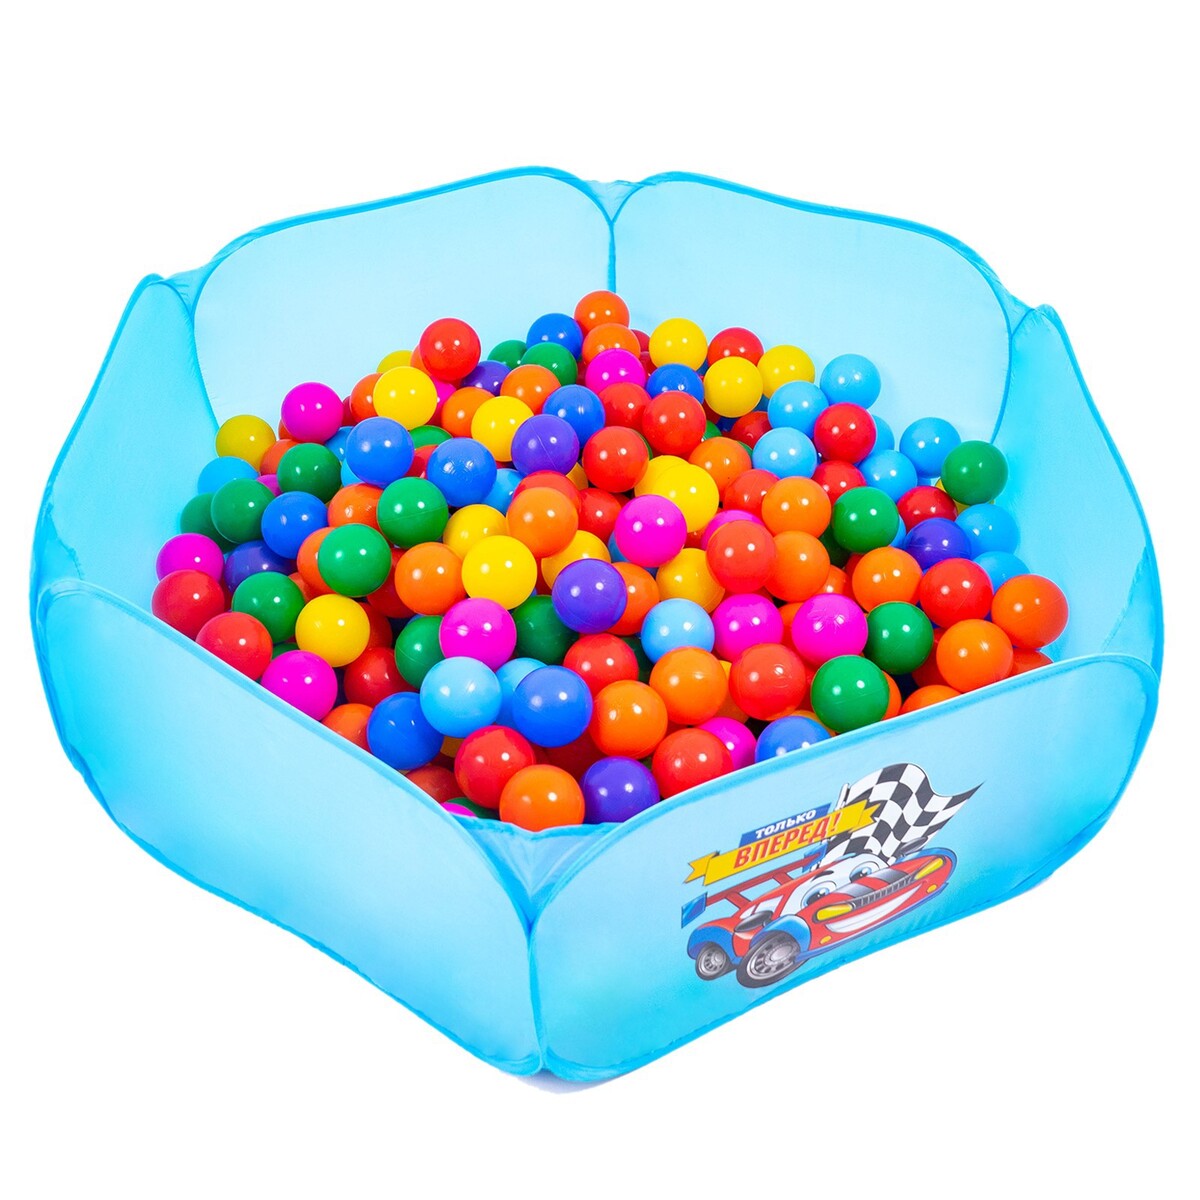 Шарики для сухого бассейна с рисунком, диаметр шара 7,5 см, набор 60 штук, разноцветные шарики для сухого бассейна 30 штук диаметр 5 см